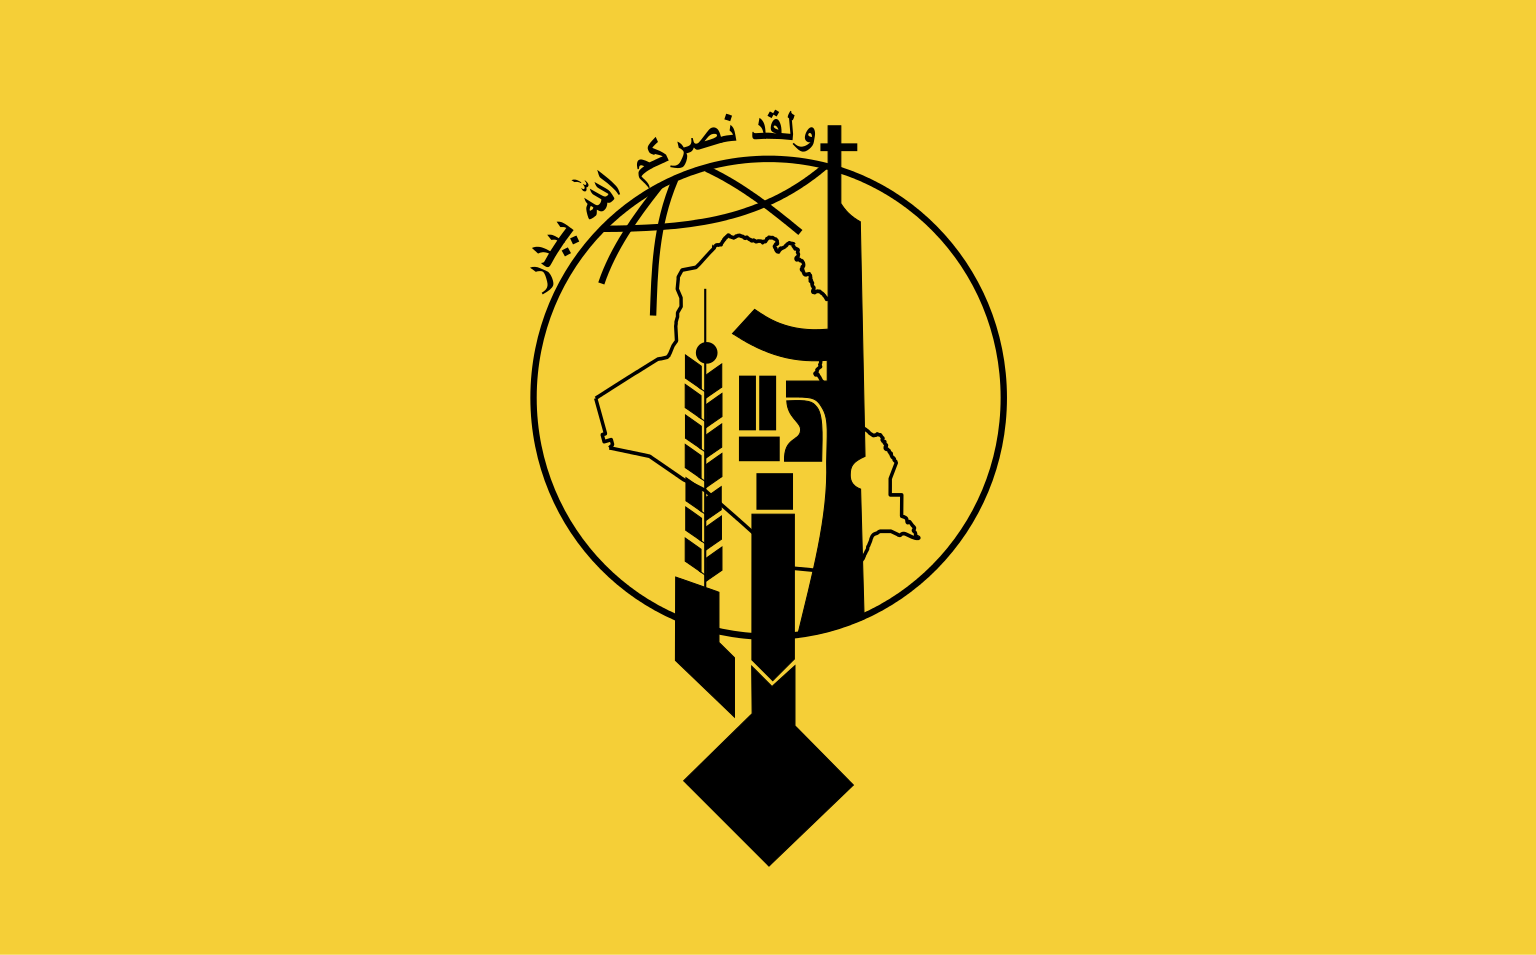 منظمة بدر:قوات البيش مركة تخرق القوانين